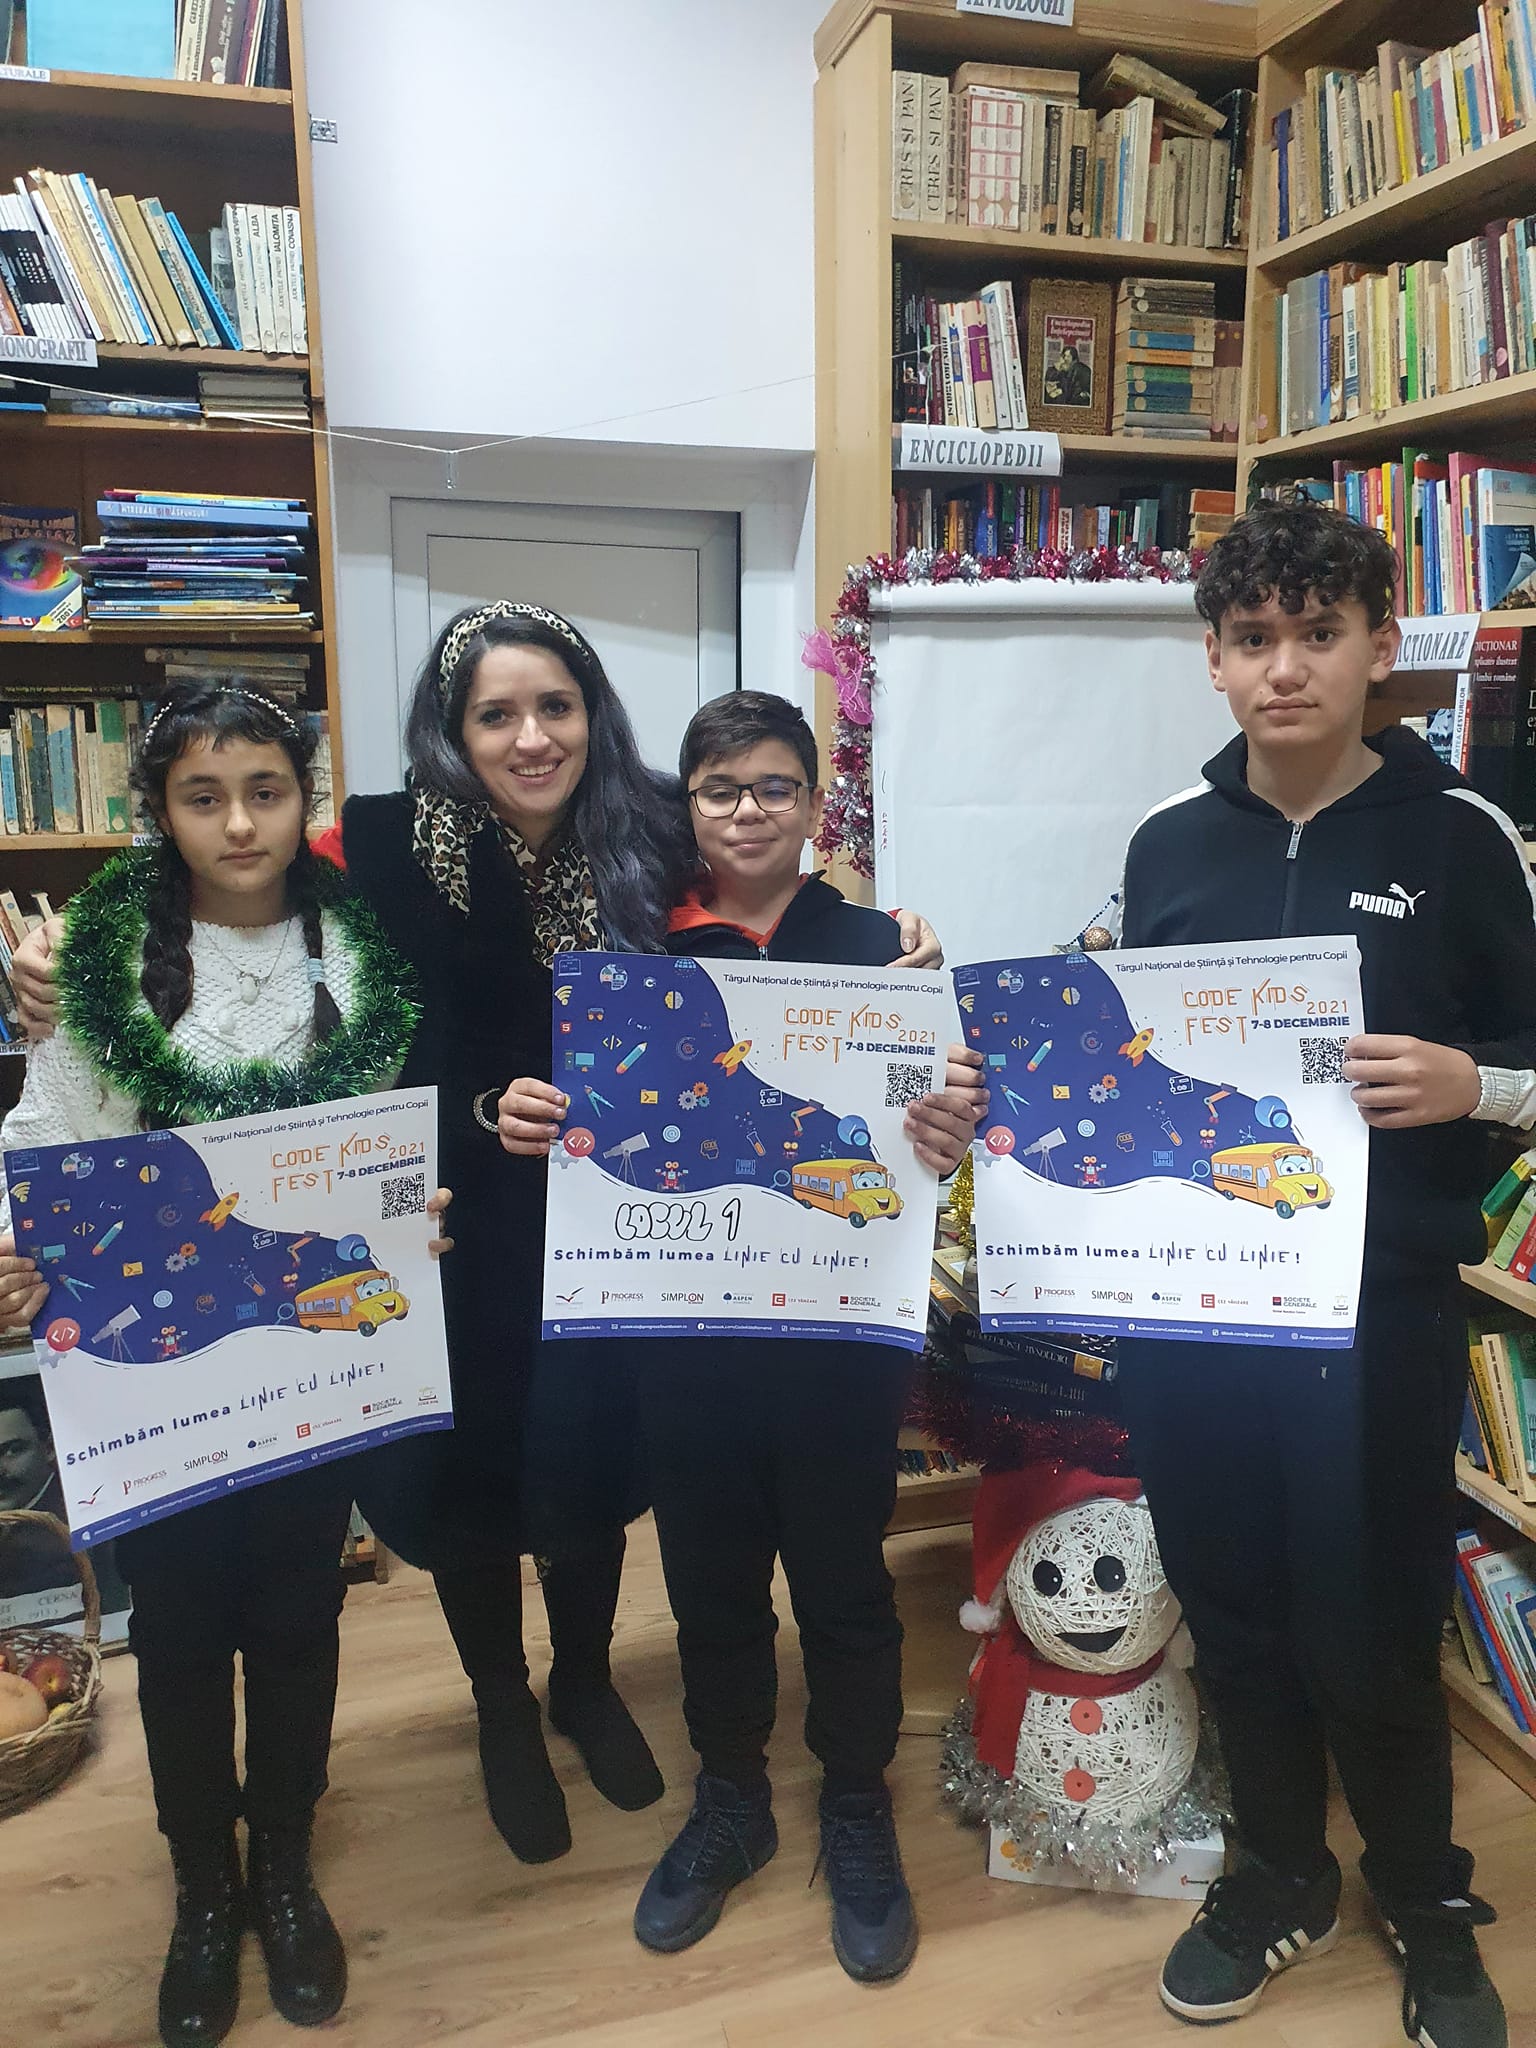 Trei copii din Cerna au câștigat locul I la CODE Kids FEST 2021 – Târgul Național de Știință și Tehnologie pentru Copii, cu o seră inteligentă!